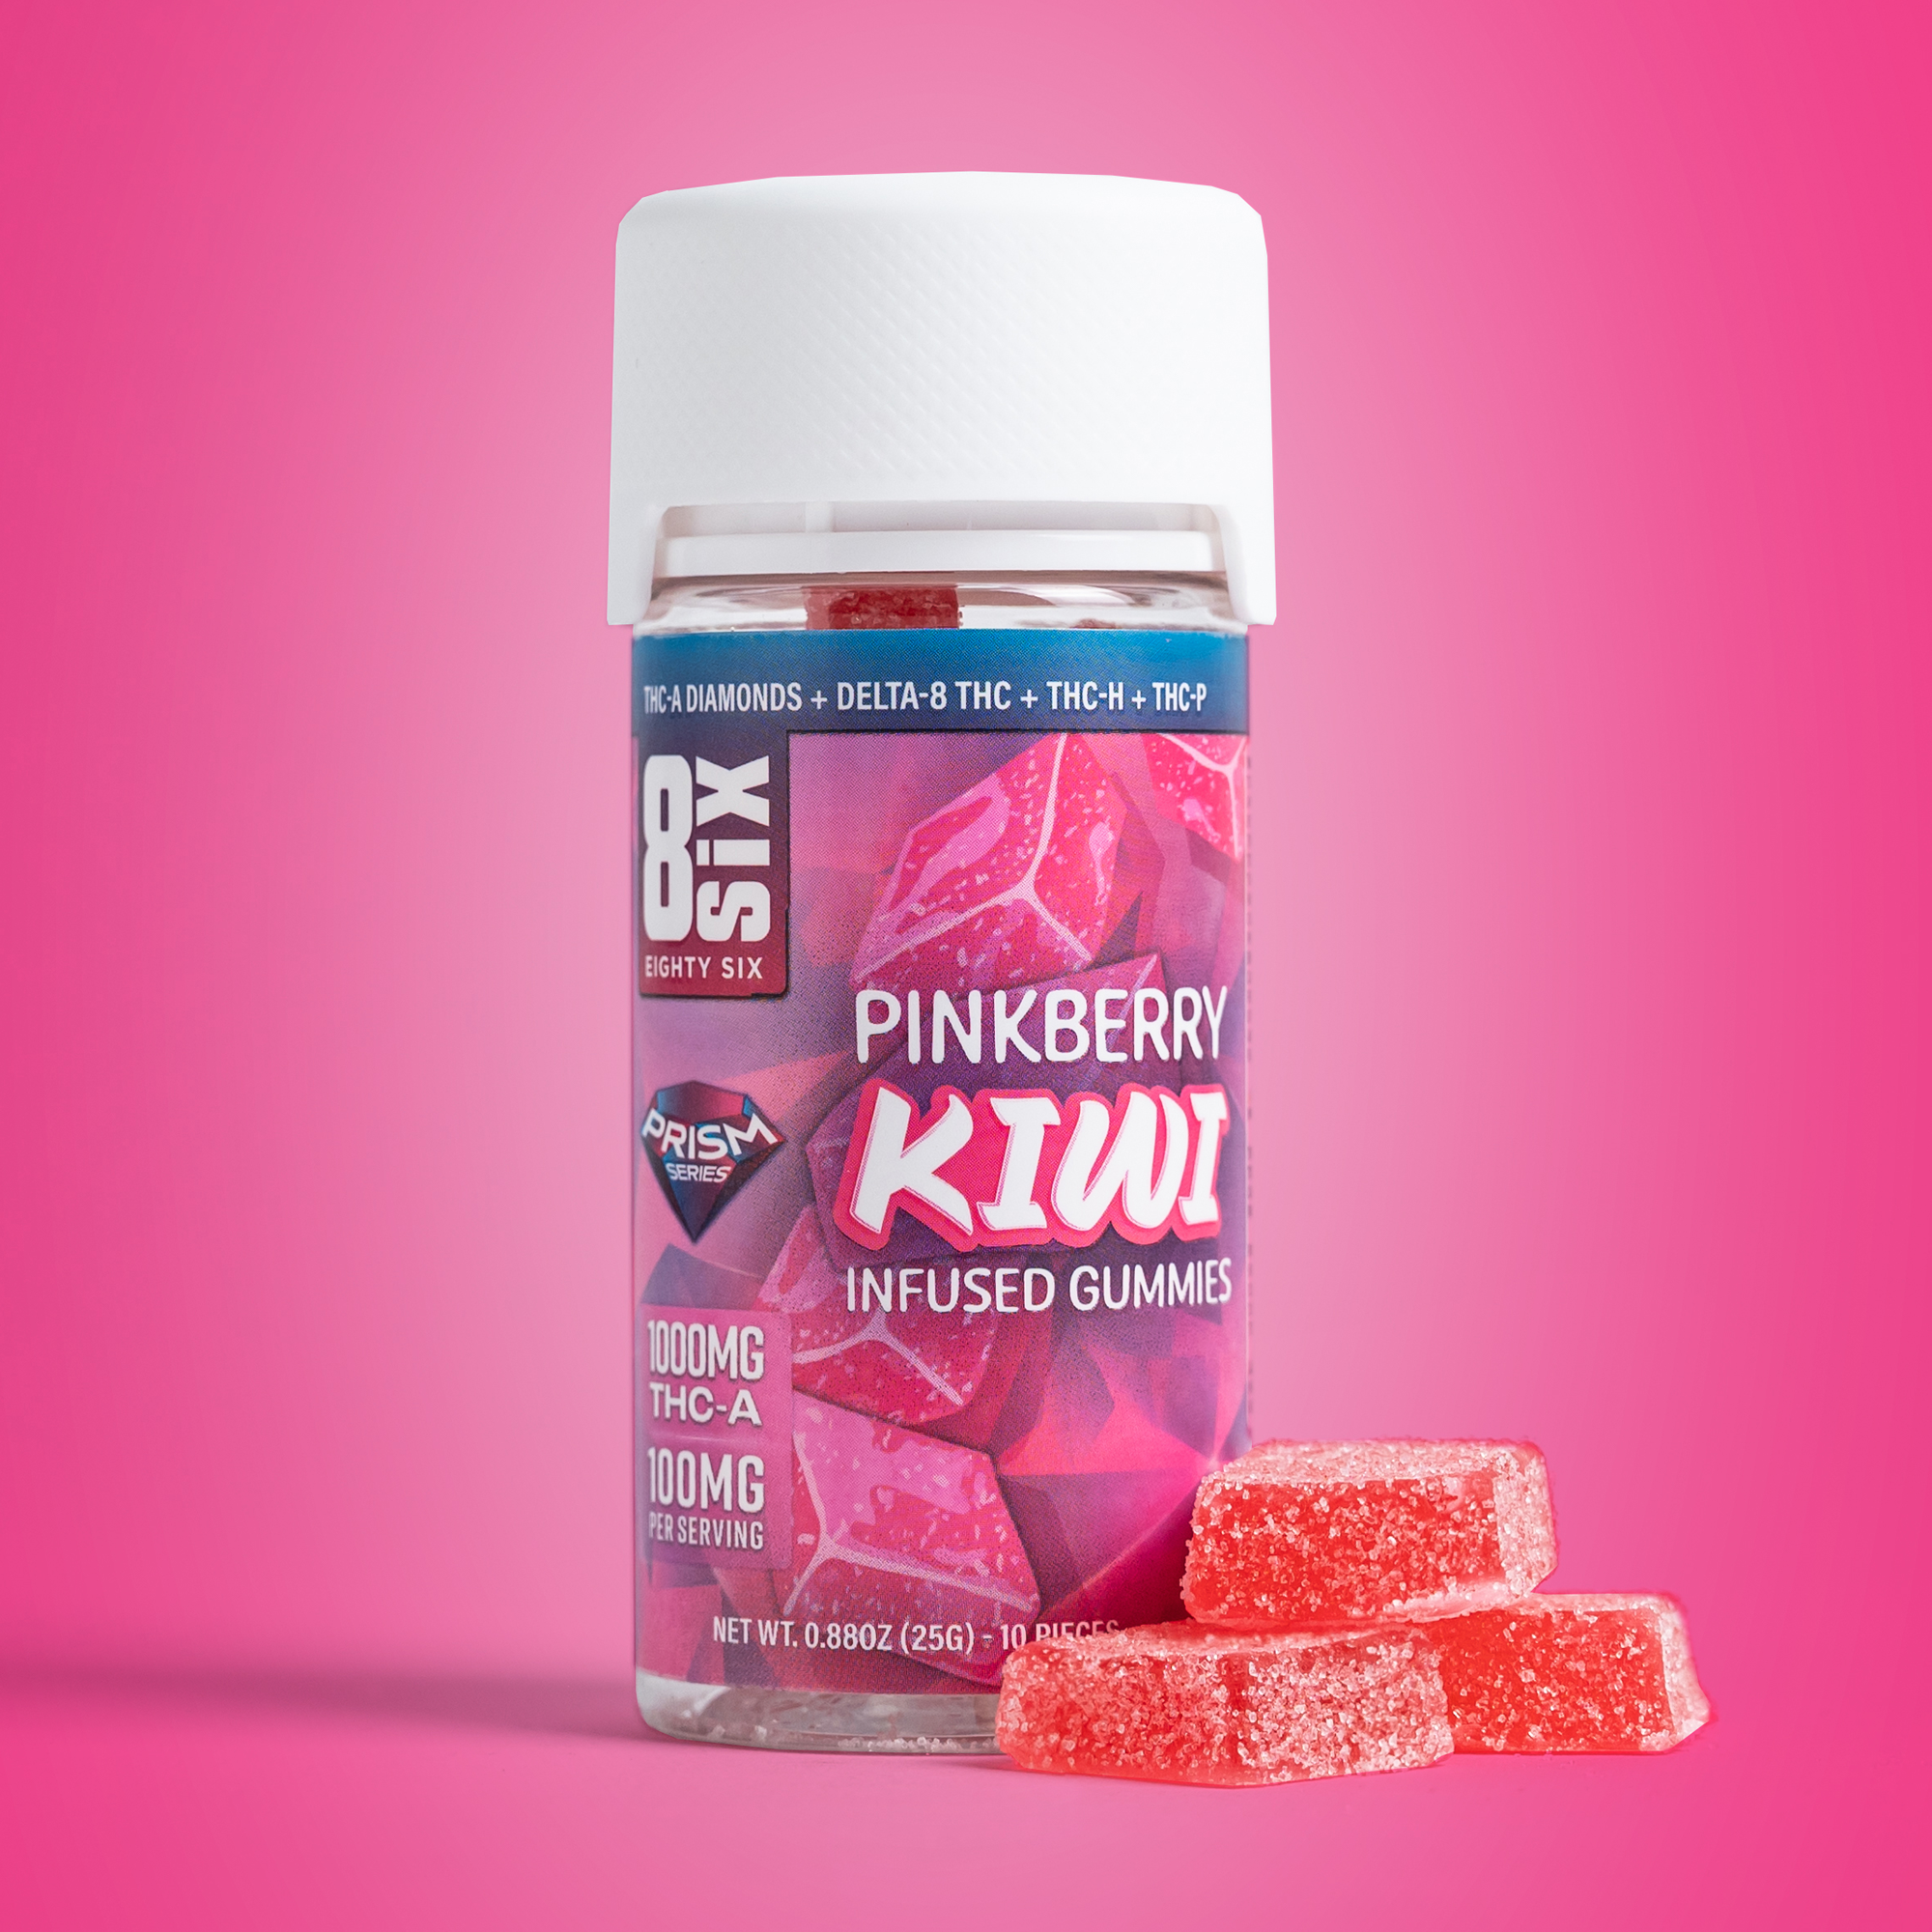 Eighty Six Pinkberry Kiwi 1000MG THC-A Gummies Best Price